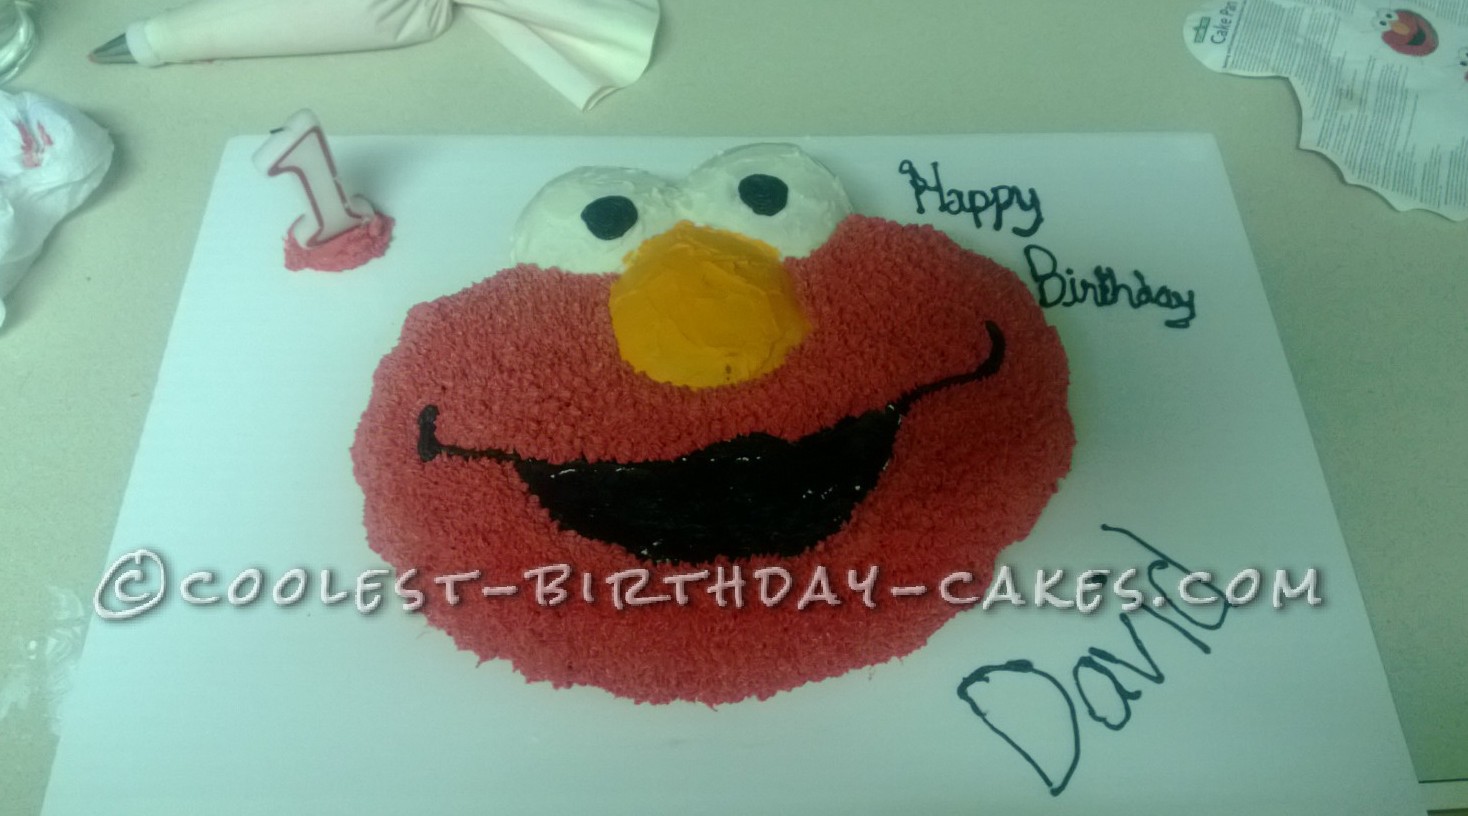 Coolest Elmo Birthday Cake